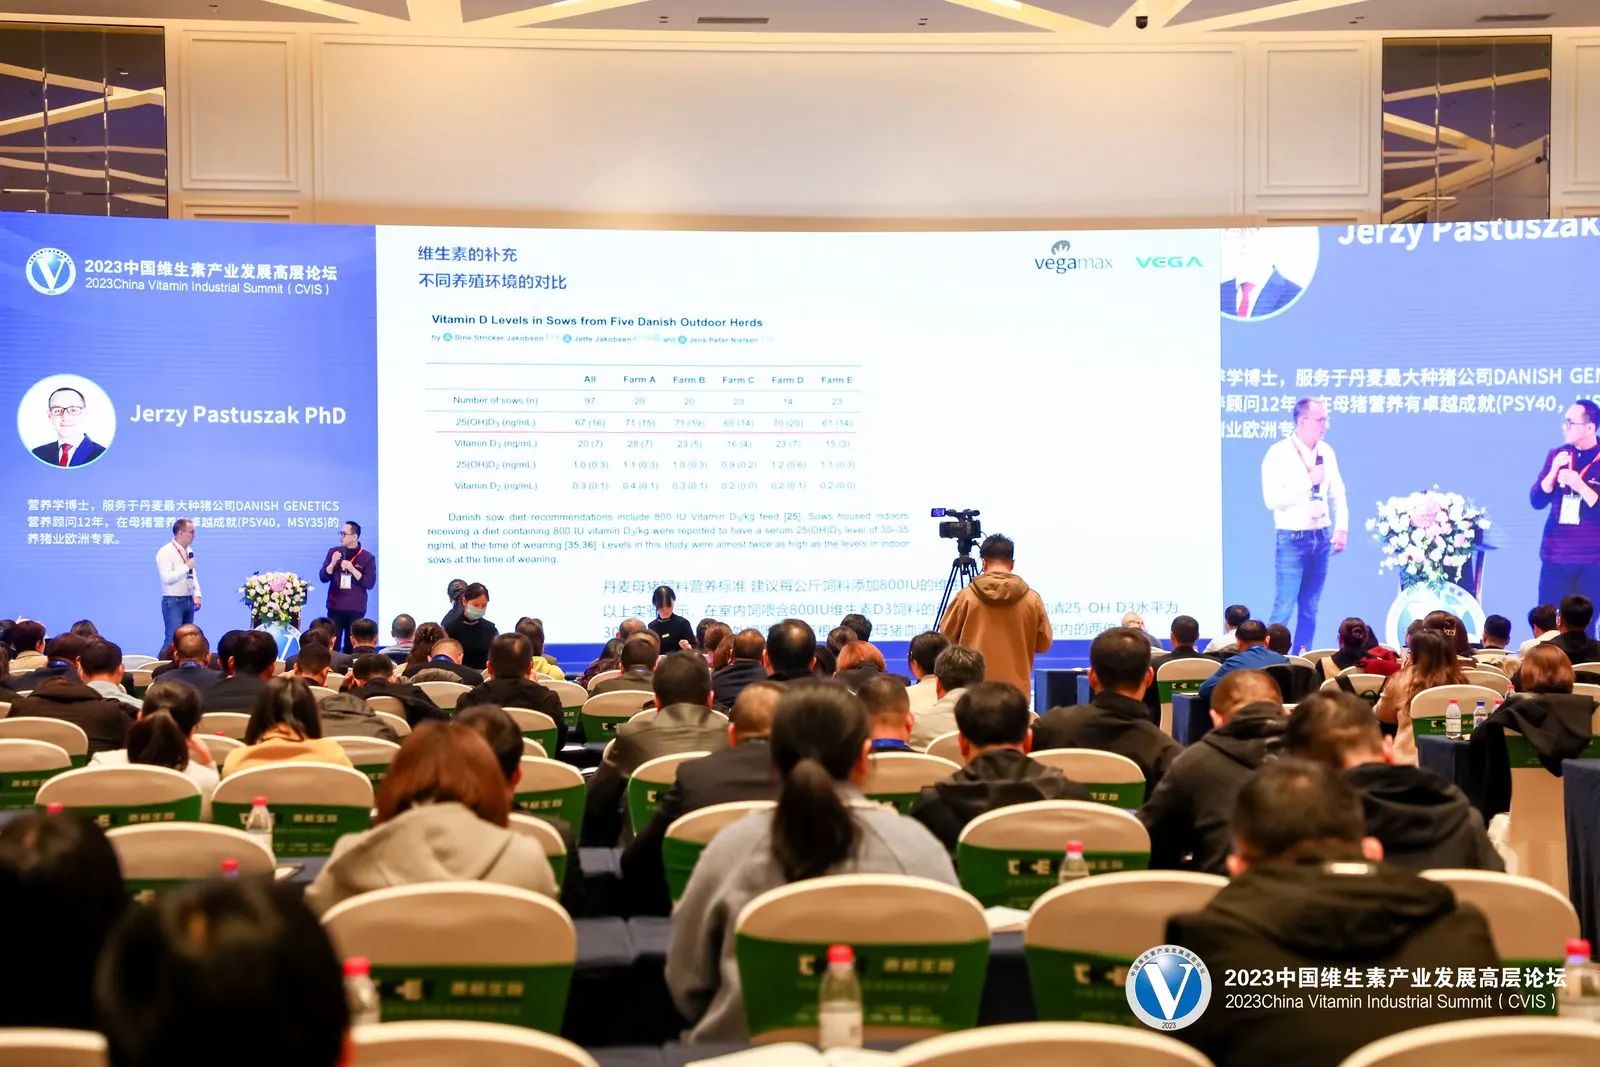 2023中国维生素产业发展高层论坛